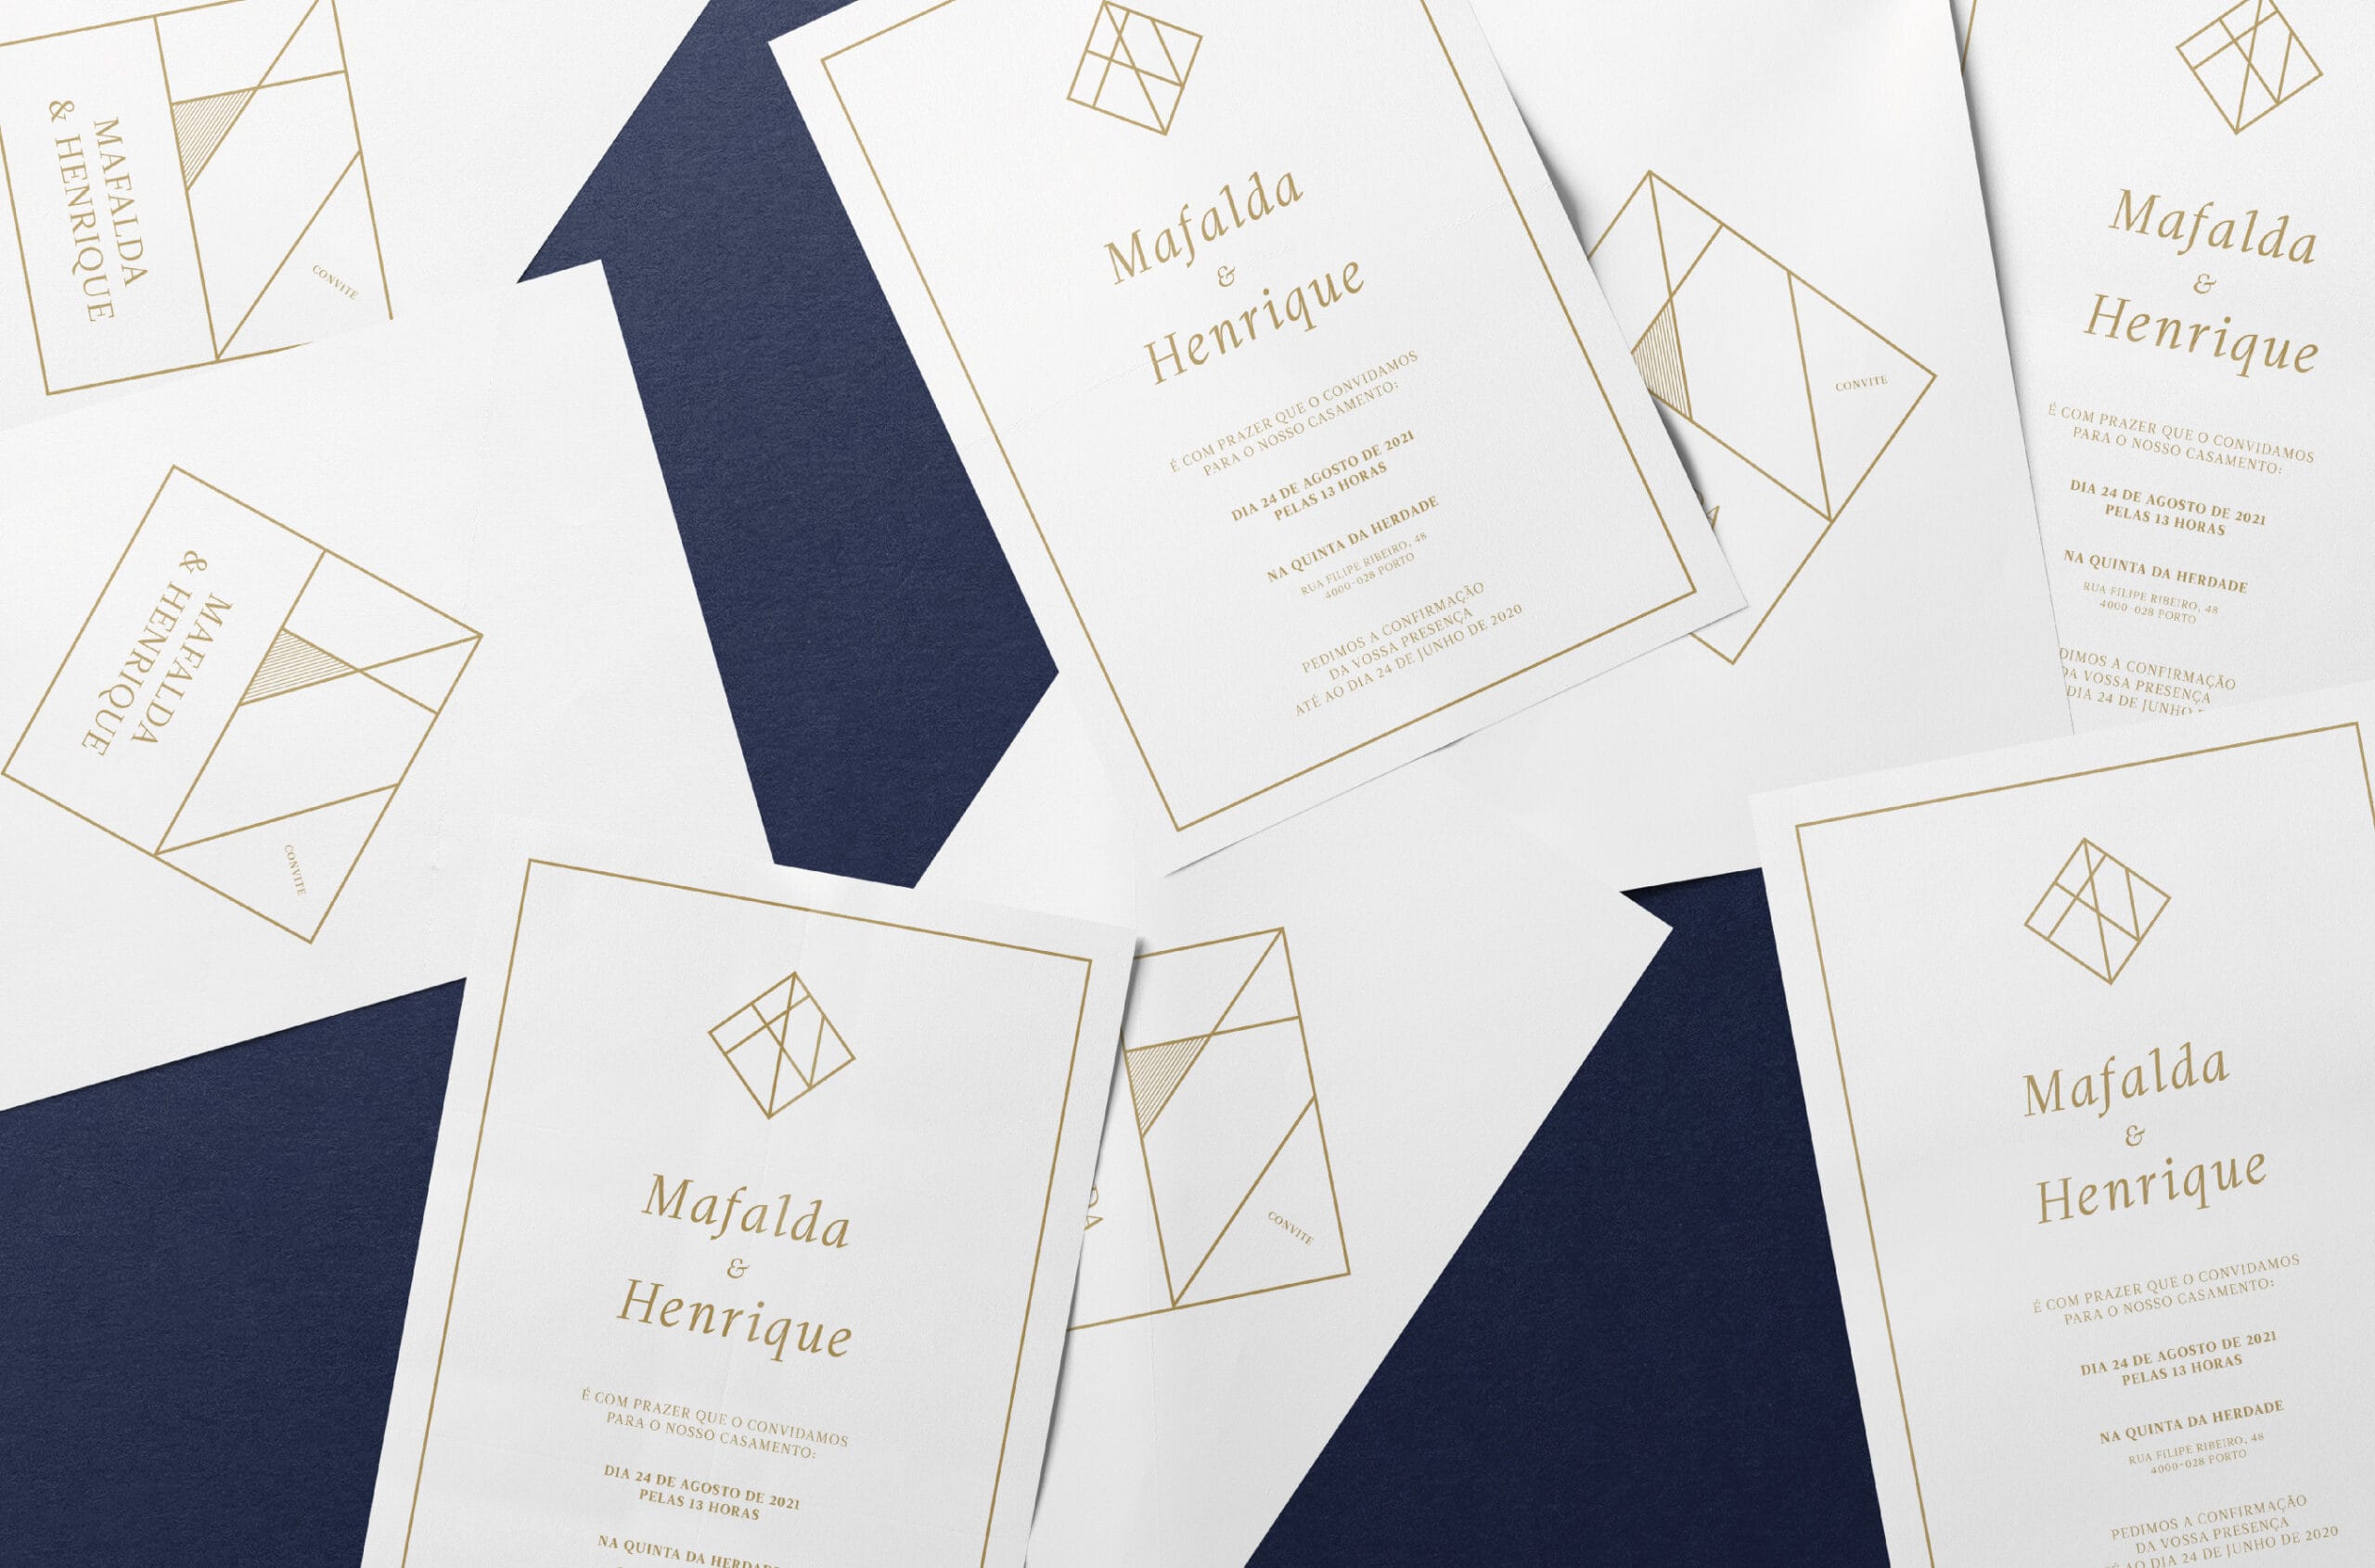 Vários convites de casamento de estilo geométrico brancos com tipografia e grafismo dourados